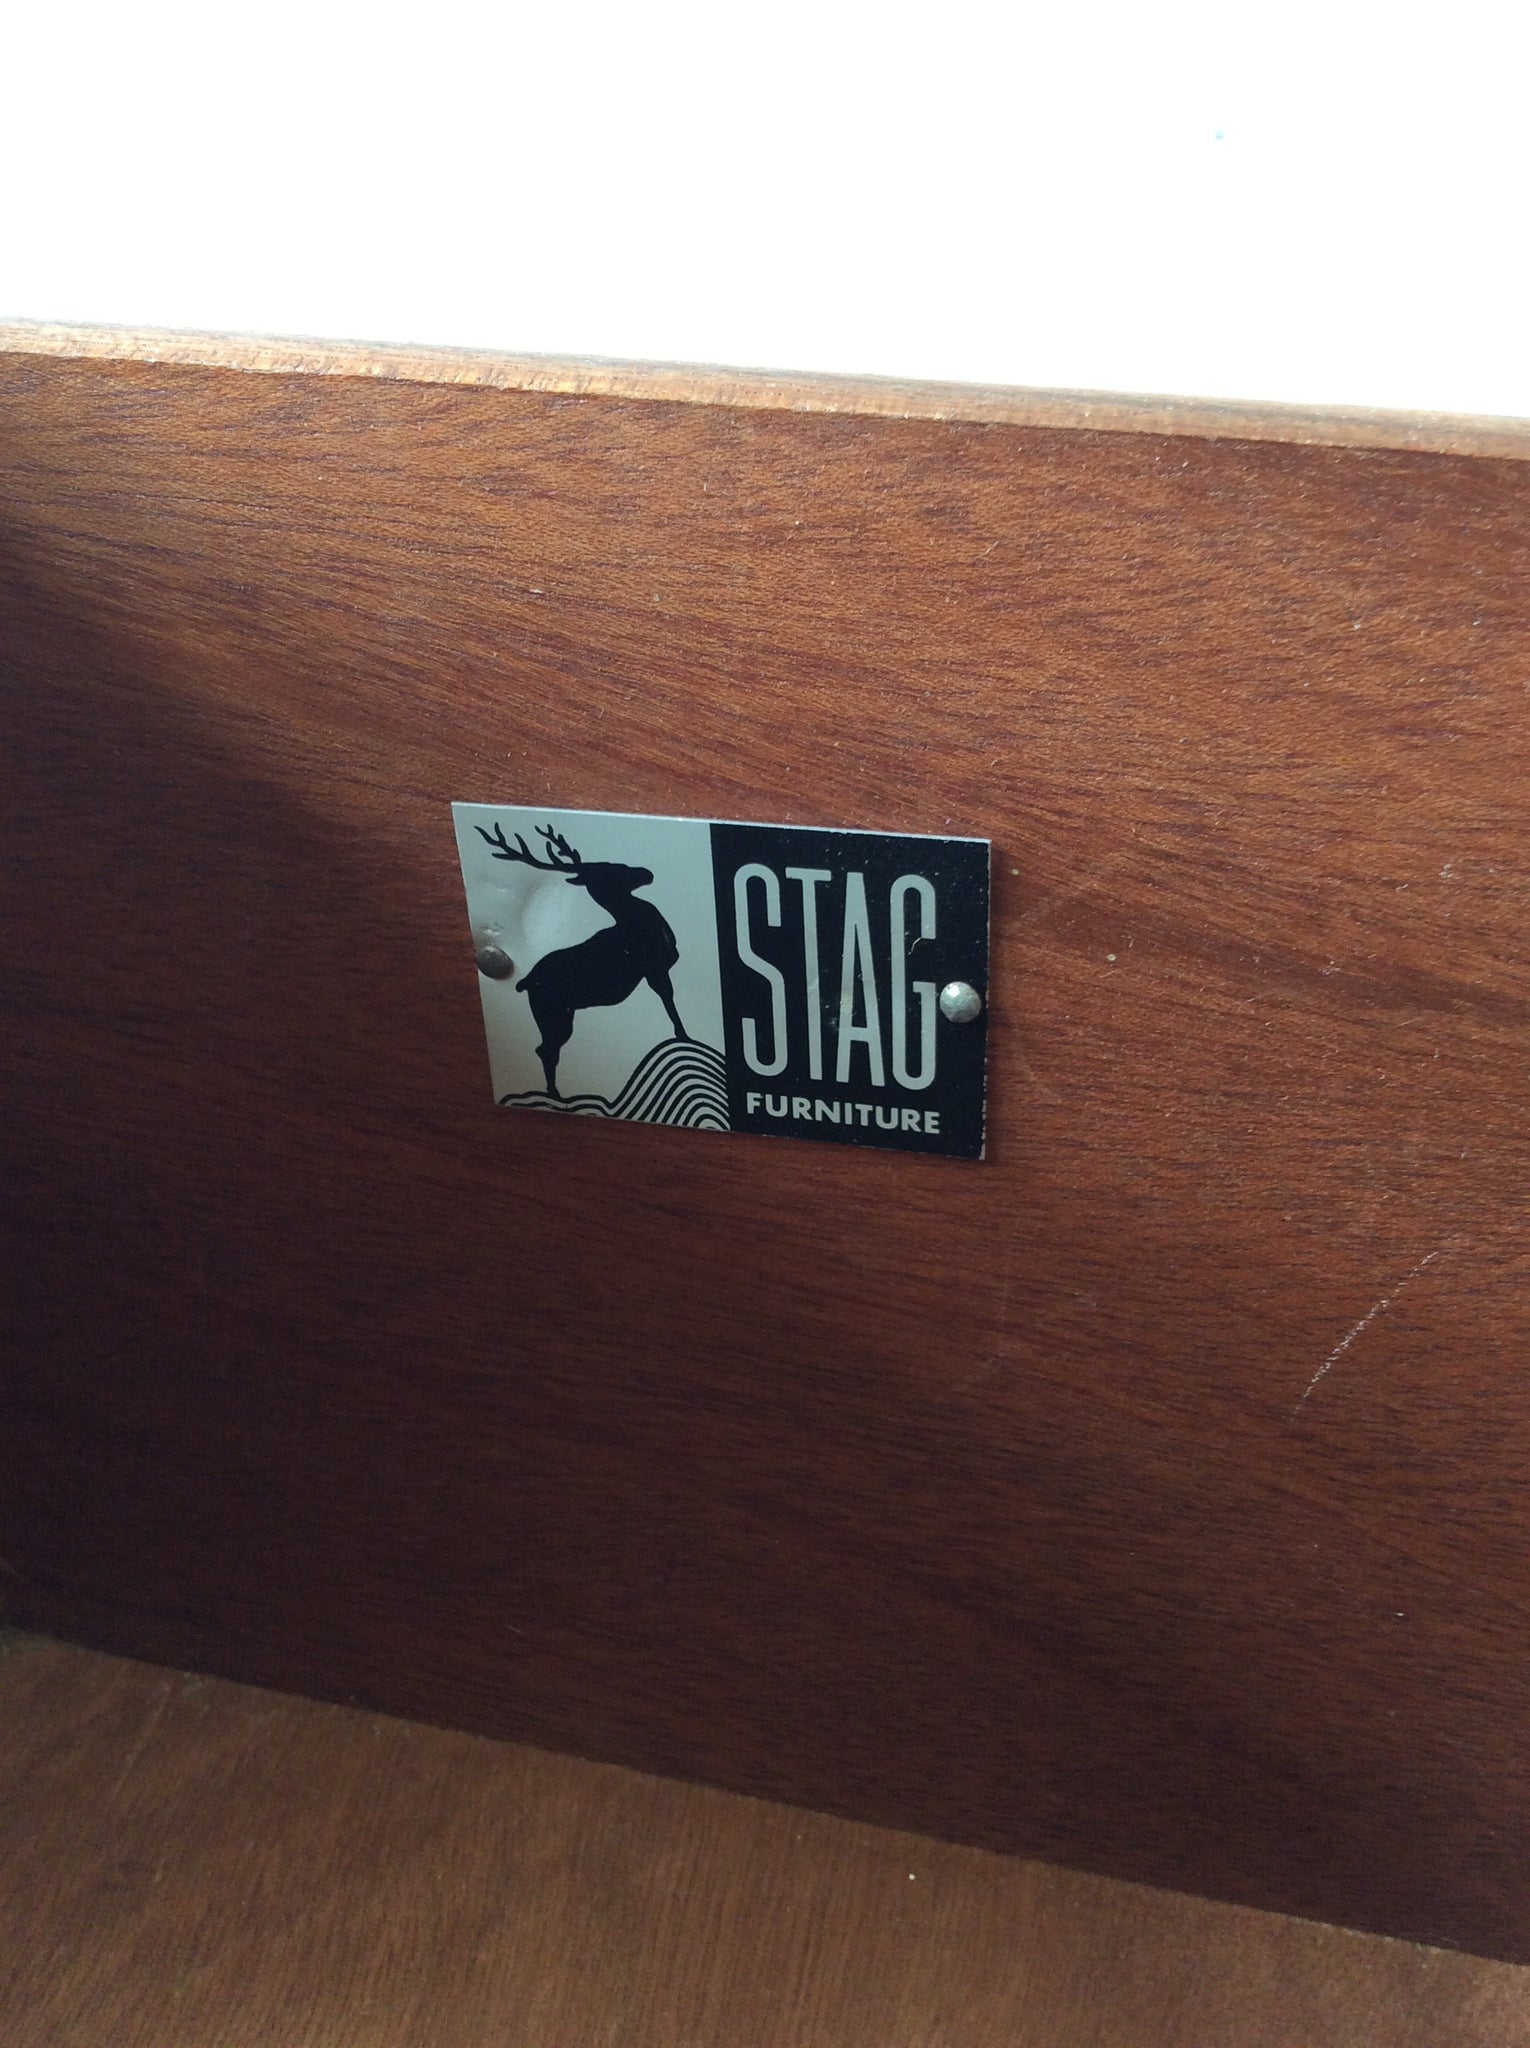 スタッグ 'コンコルド' デスク / stag 'concord' desk  #0116